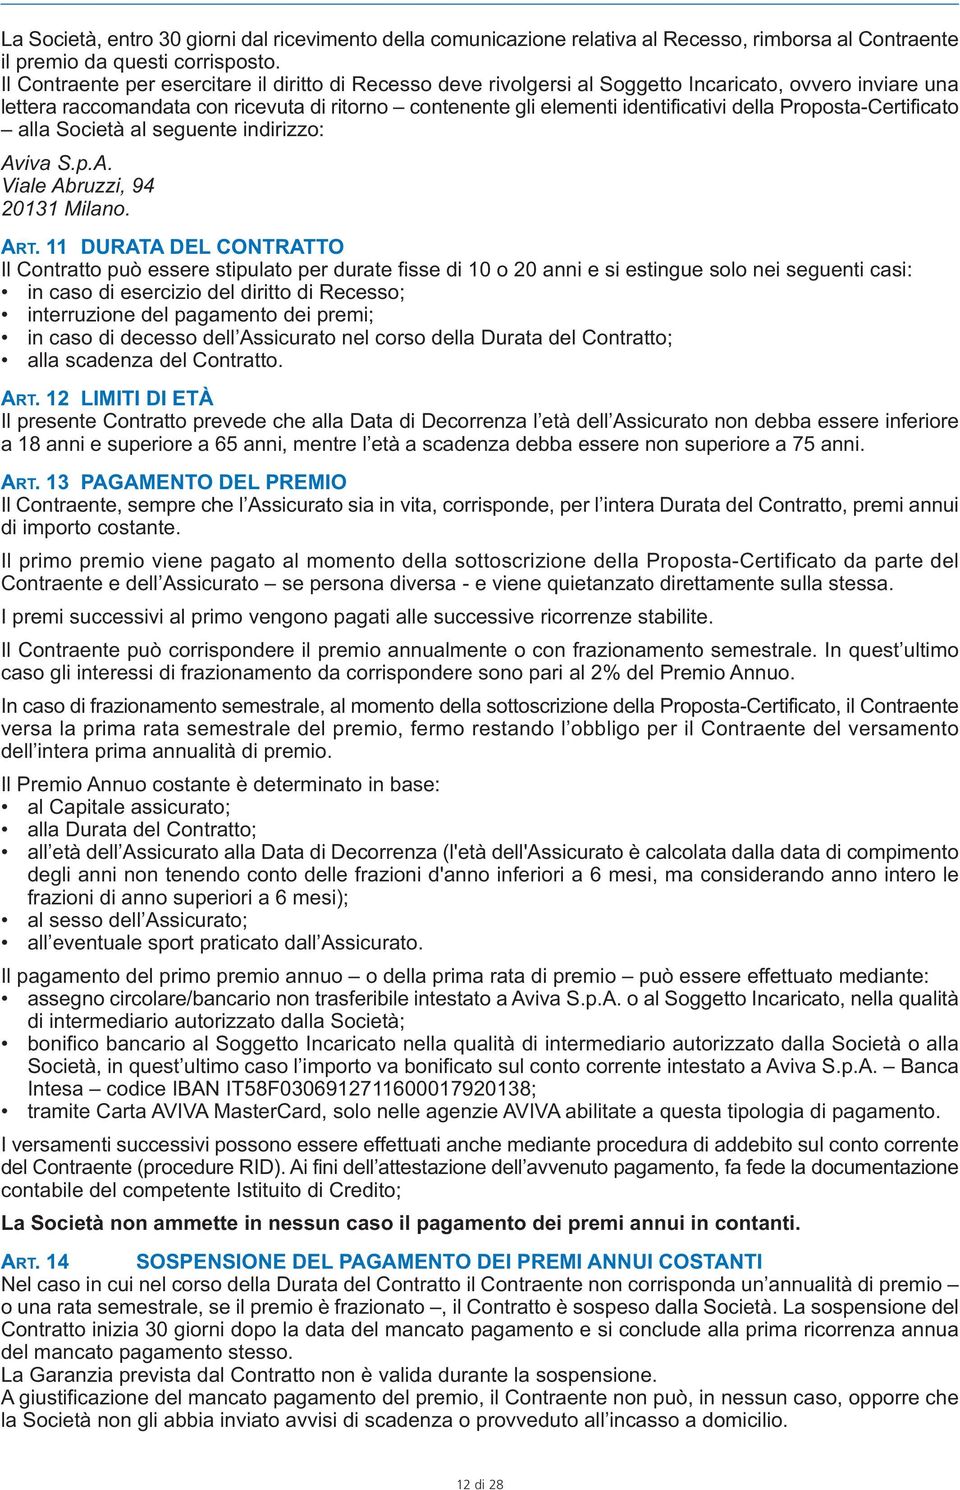 Proposta-Certificato alla Società al seguente indirizzo: Aviva S.p.A. Viale Abruzzi, 94 20131 Milano. ART.